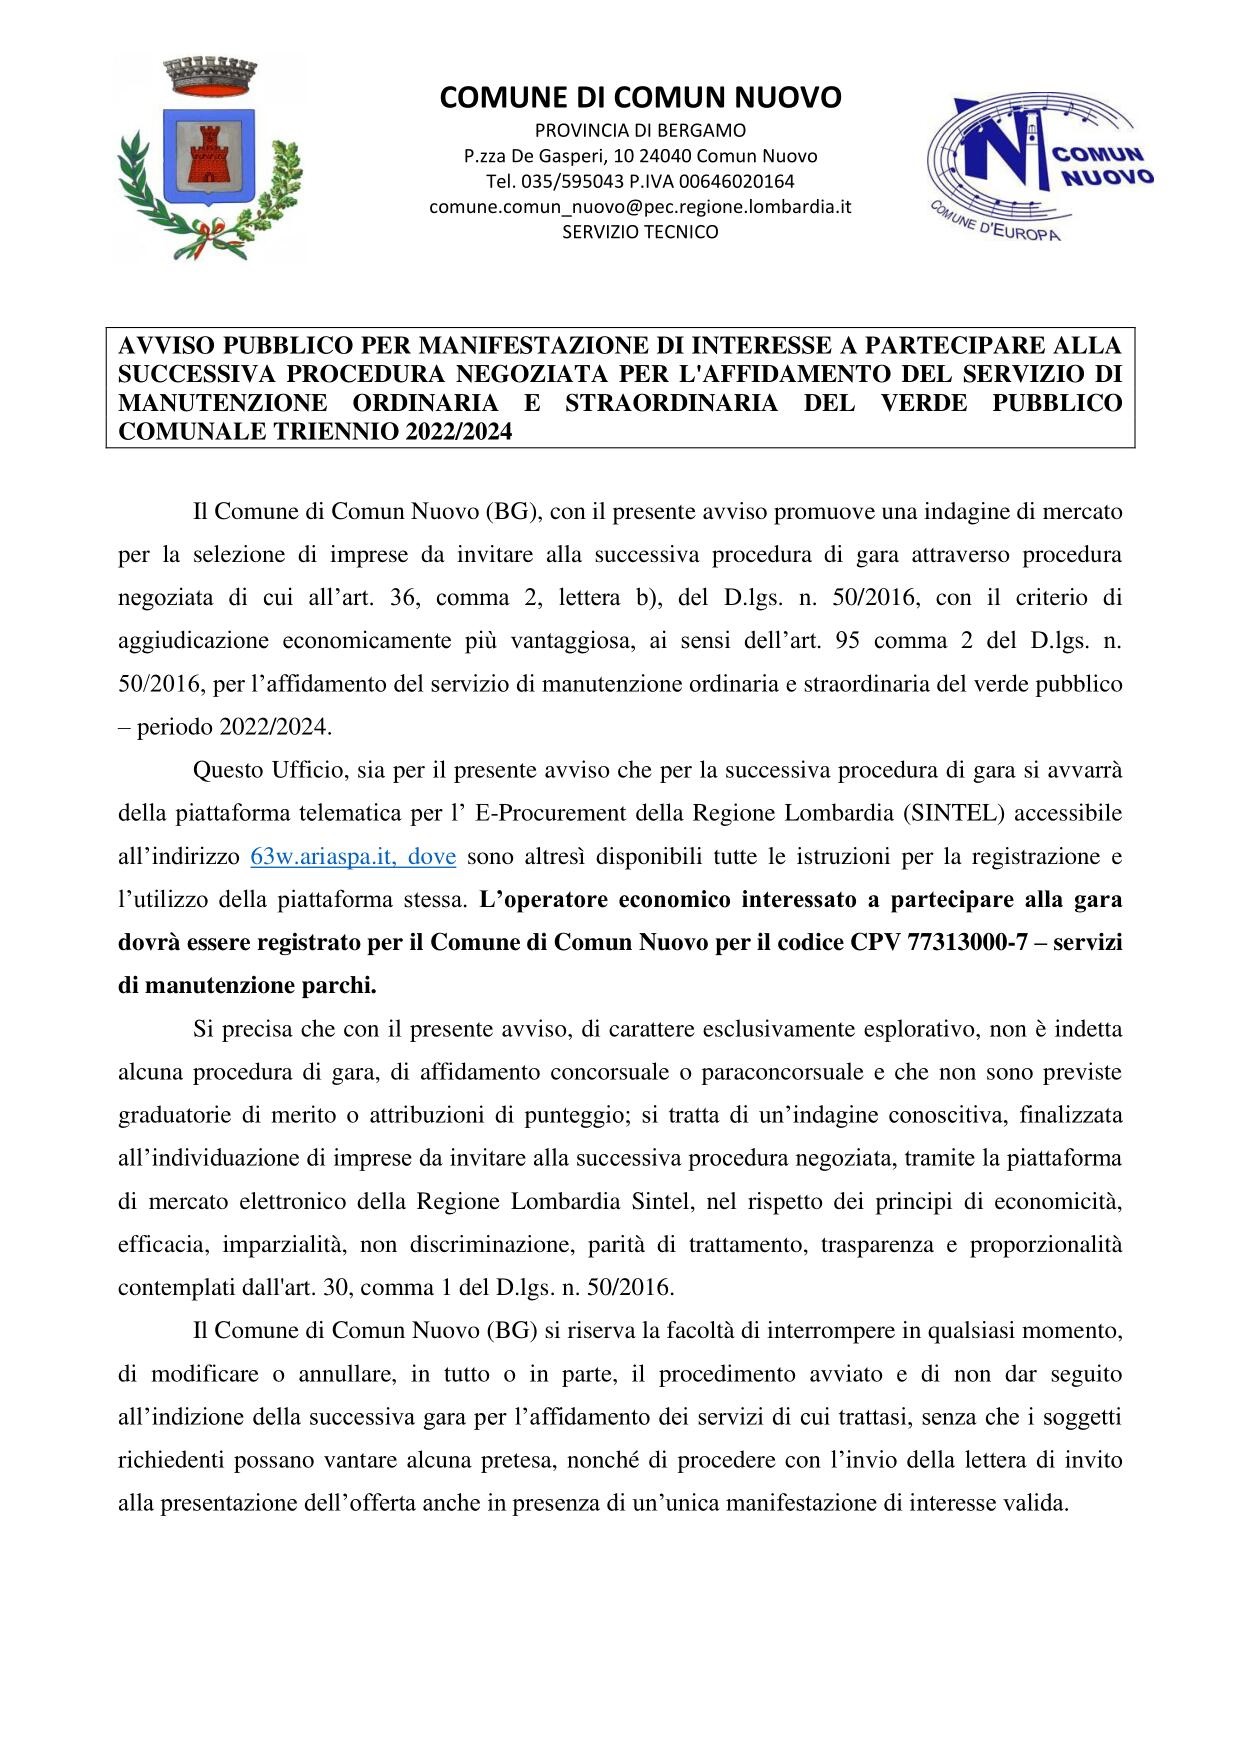 AVVISO MANIFESTAZIONE DI INTERESSE AFFIDAMENTO SERVIZIO MANUTENZIONE VERDE PUBBLICO 2022-2024